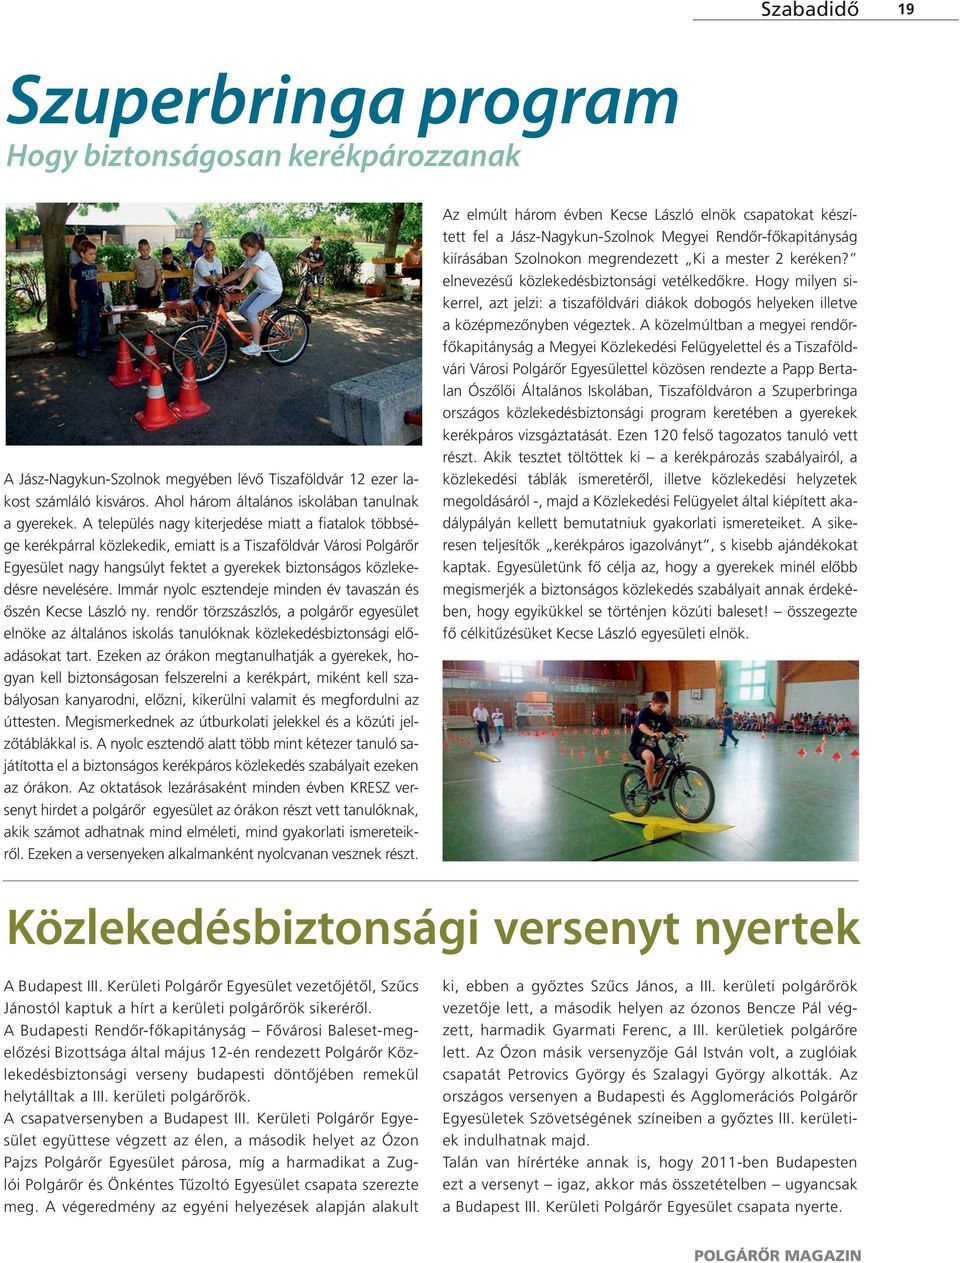 A település nagy kiterjedése miatt a fiatalok többsége kerékpárral közlekedik, emiatt is a Tiszaföldvár Városi Polgárőr Egyesület nagy hangsúlyt fektet a gyerekek biztonságos közlekedésre nevelésére.